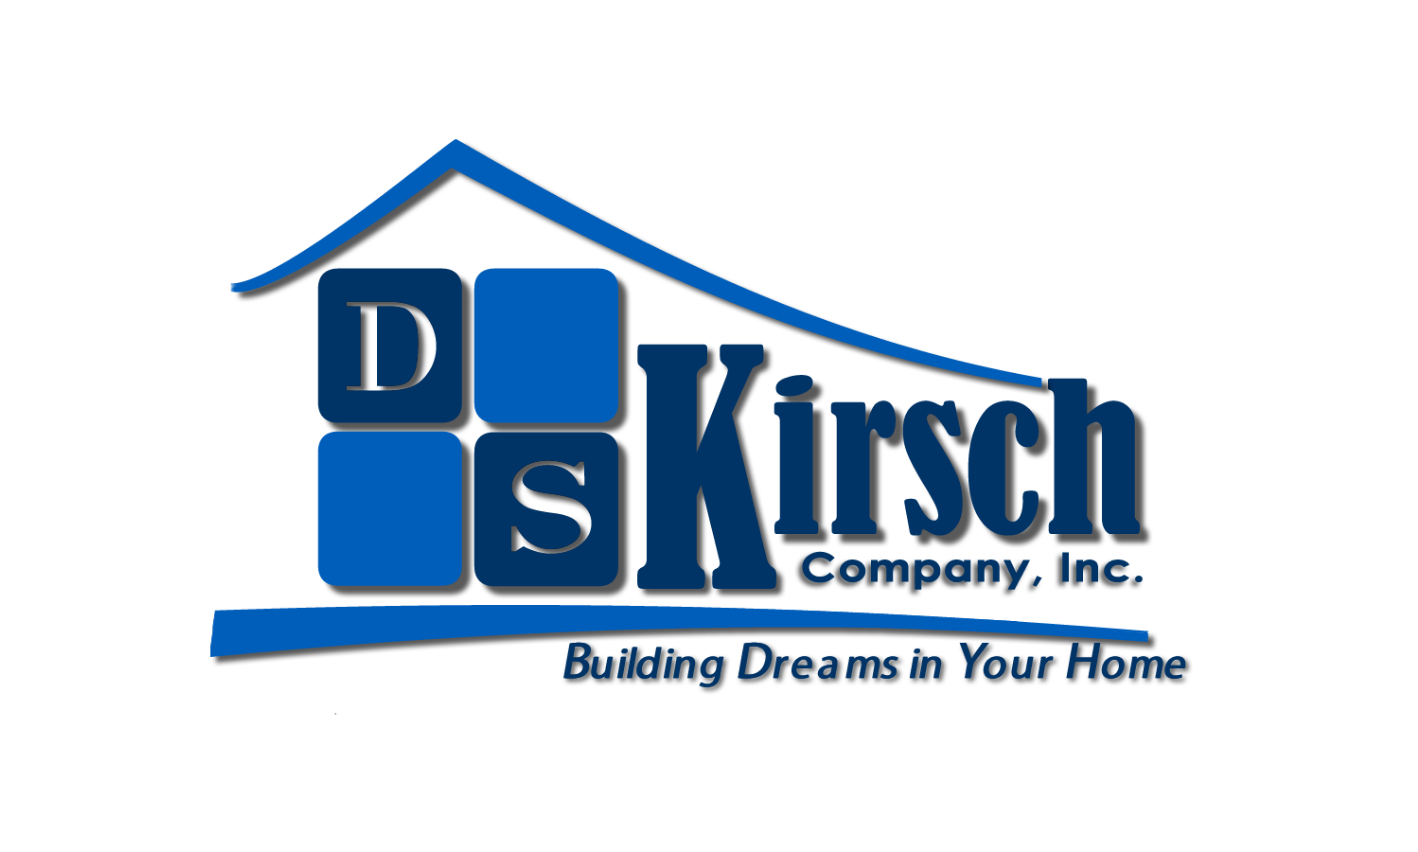 D S Kirsch Construction Logo